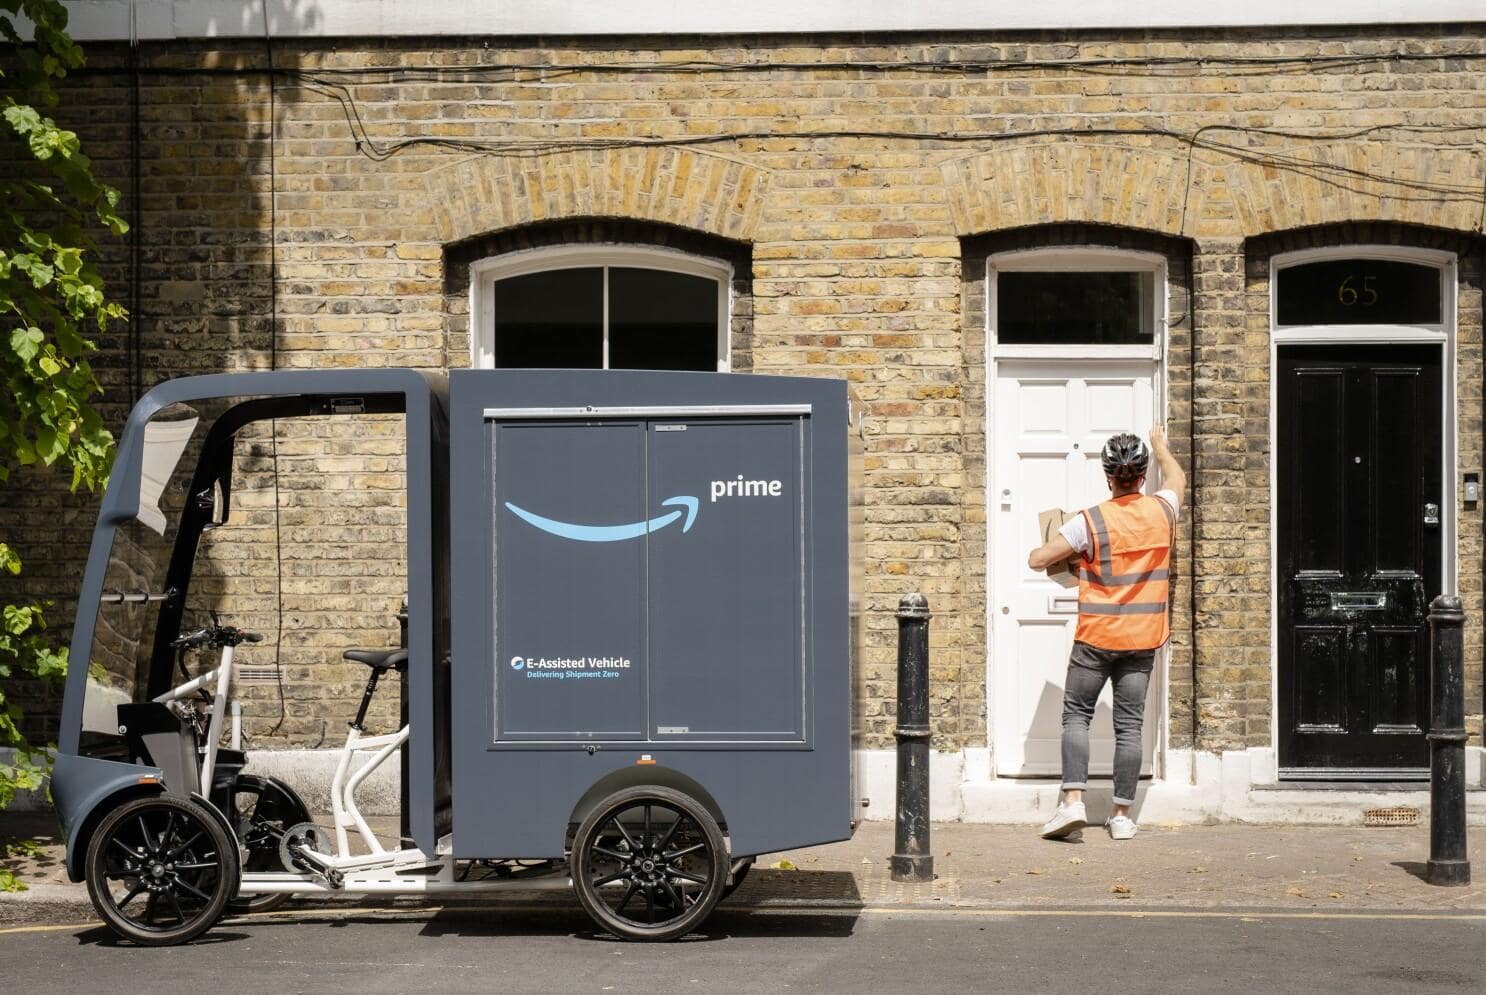 Ví dụ tiêu biểu: Amazon tại Anh sử dụng xe điện để giao hàng